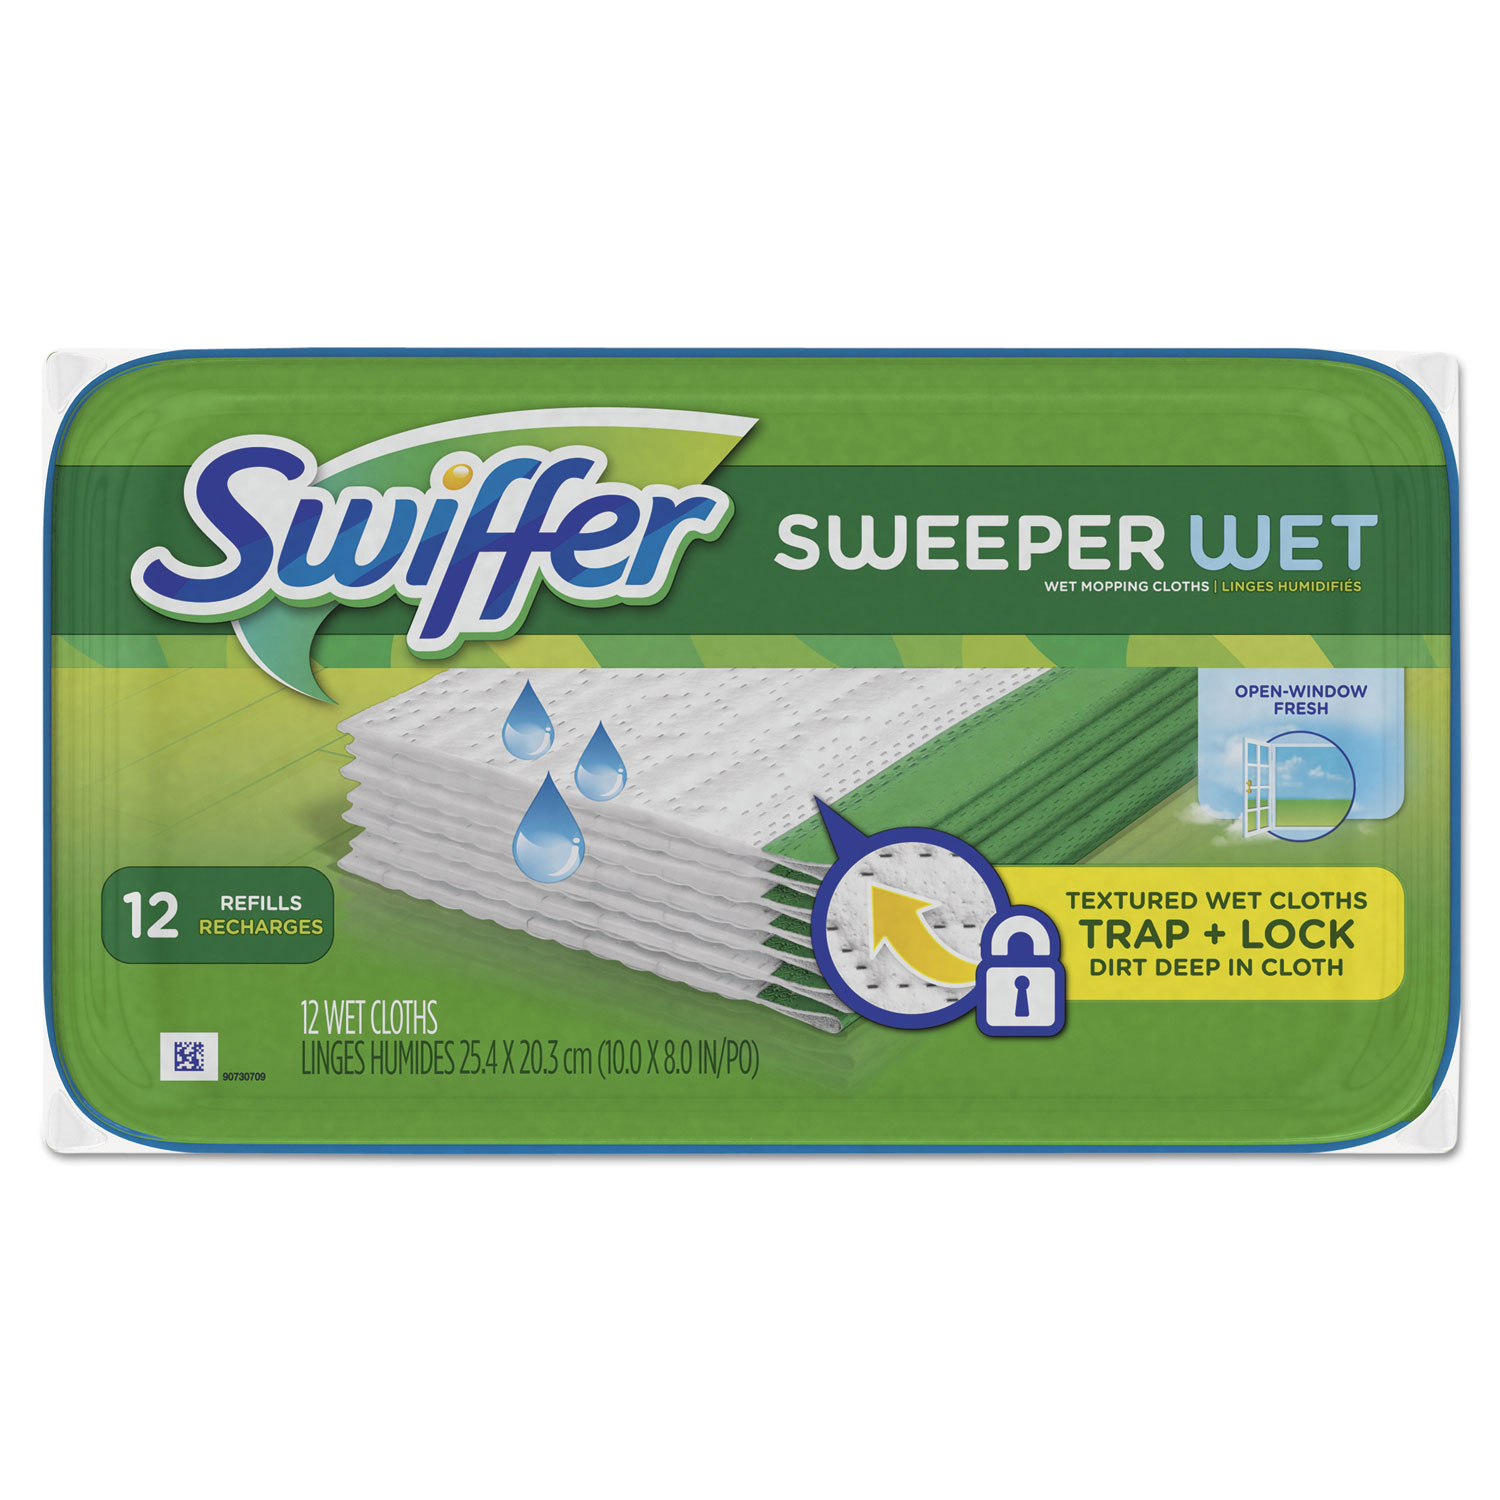 Swiffer Wet Refill Cloths - Open Window Fresh, 8